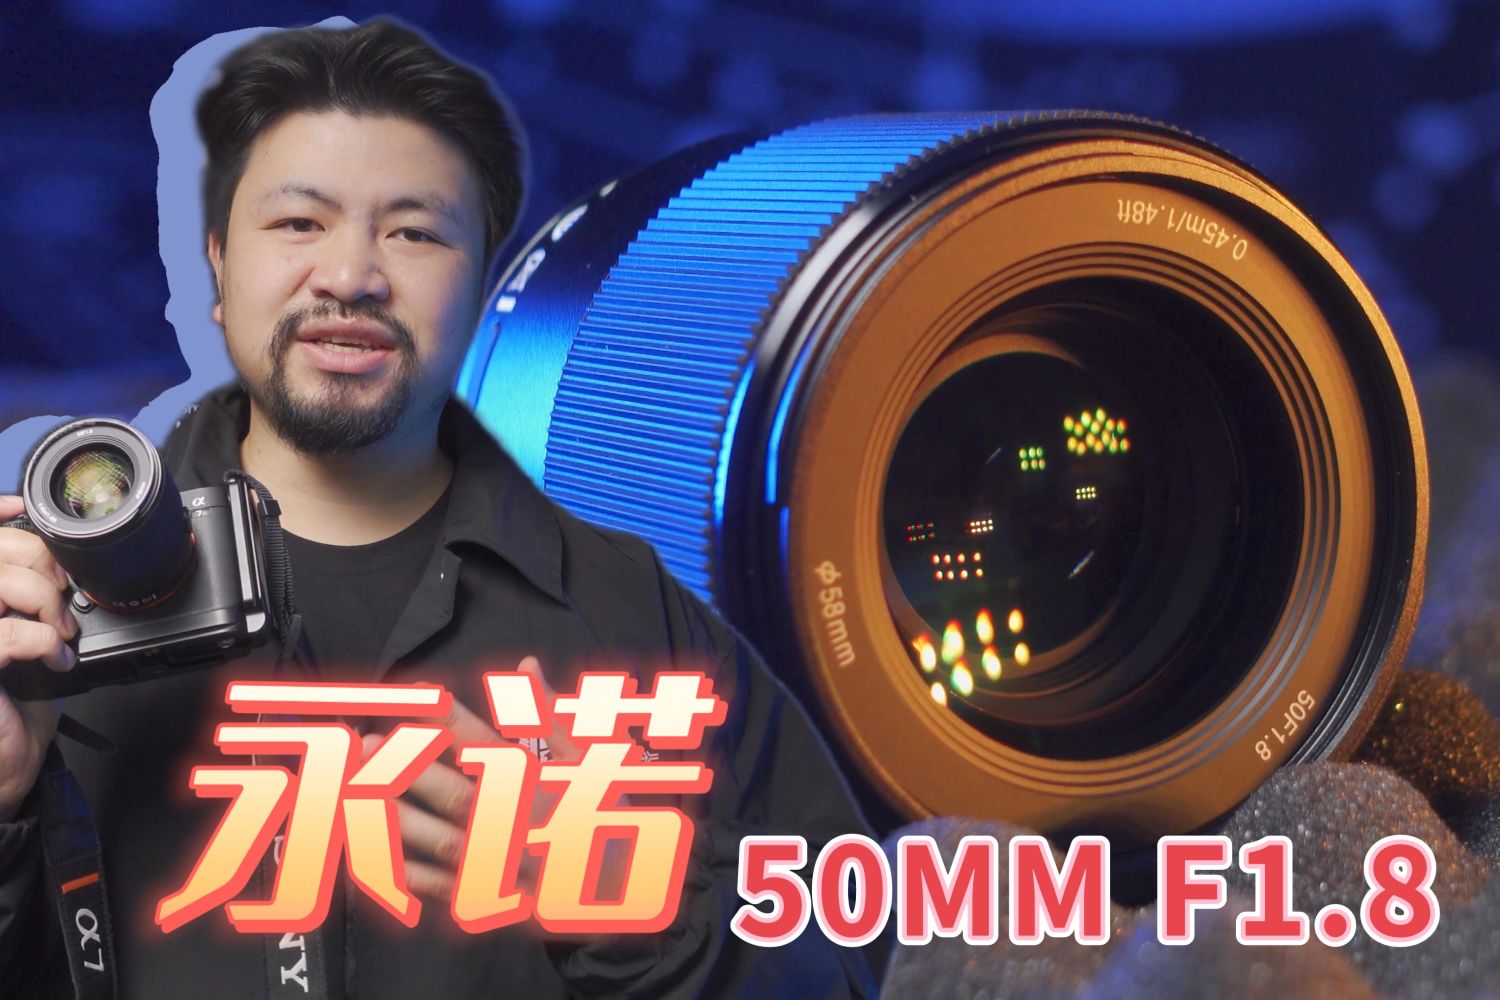 国产自动对焦镜头 永诺50MM F1.8体验